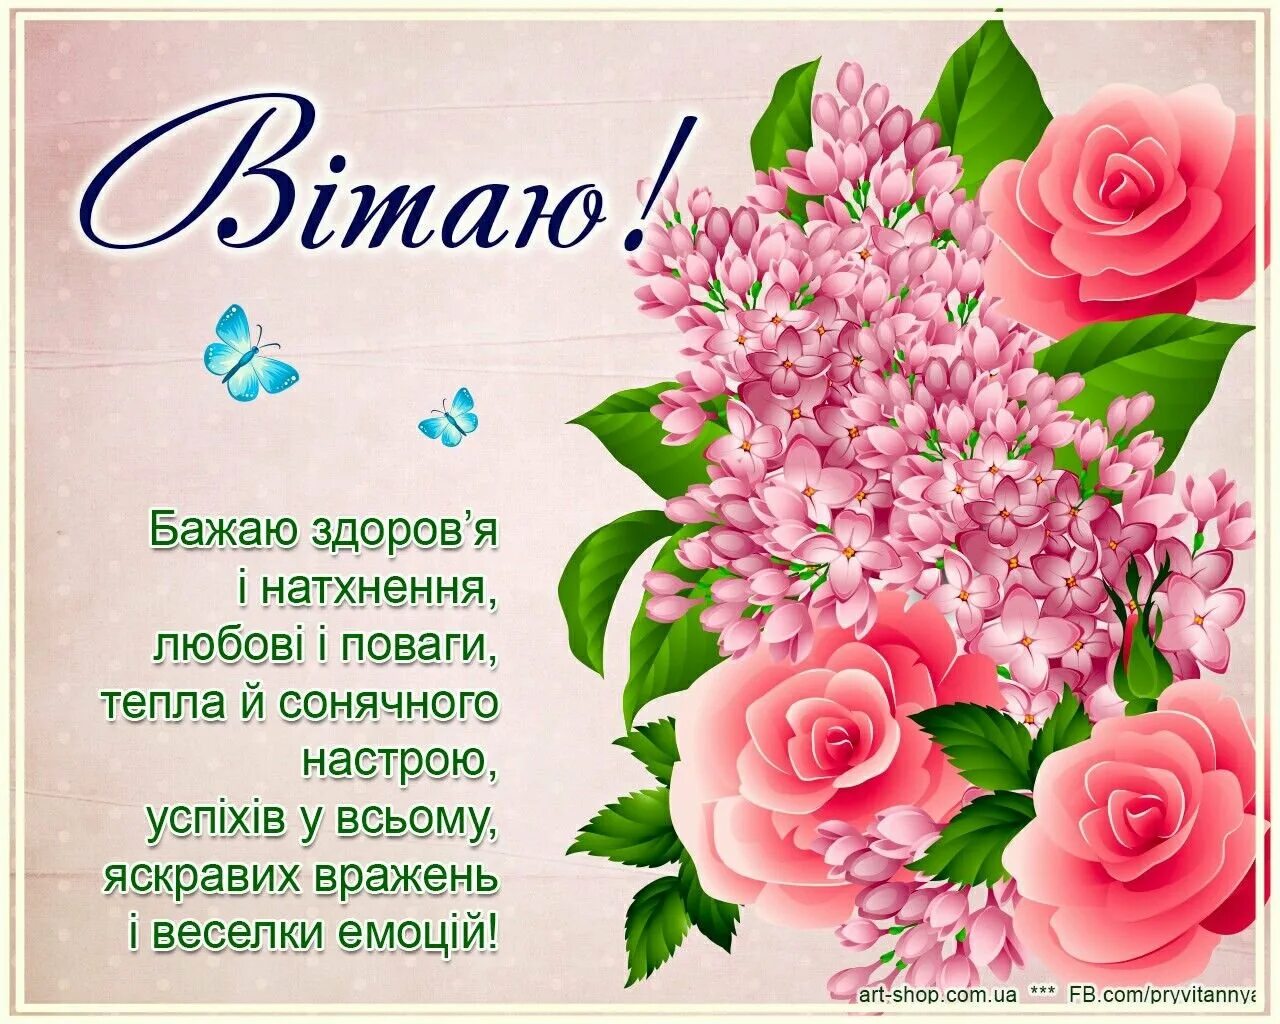 Открытки на украинском языке. З днем народження. Поздравления с днём рождения на украинском языке. Поздравление с днёмрожденияна украинскомязыке. Поздравления с днём рождения женщине на украинском языке.